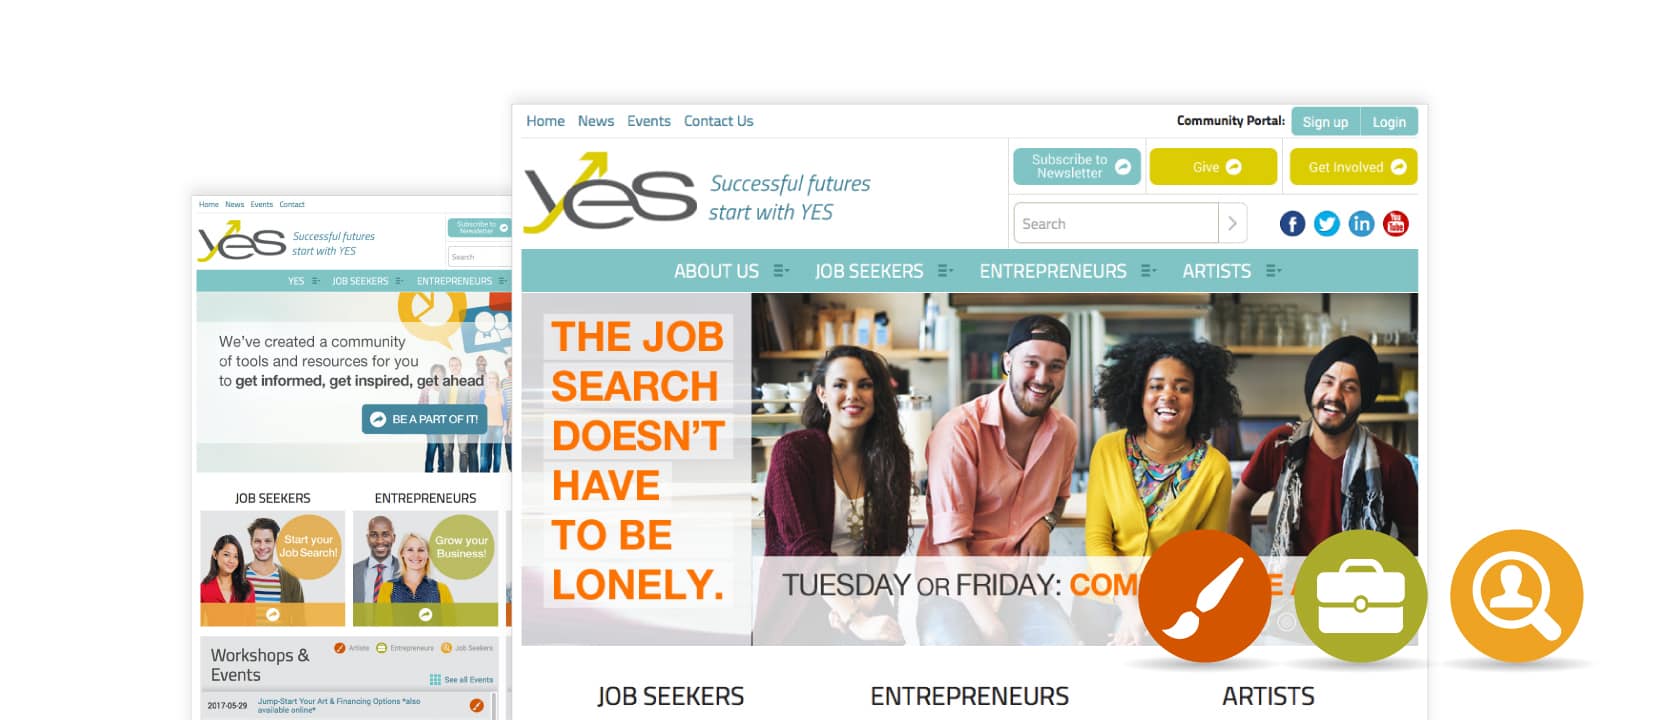 Captures d'écran de la page d'accueil de YES